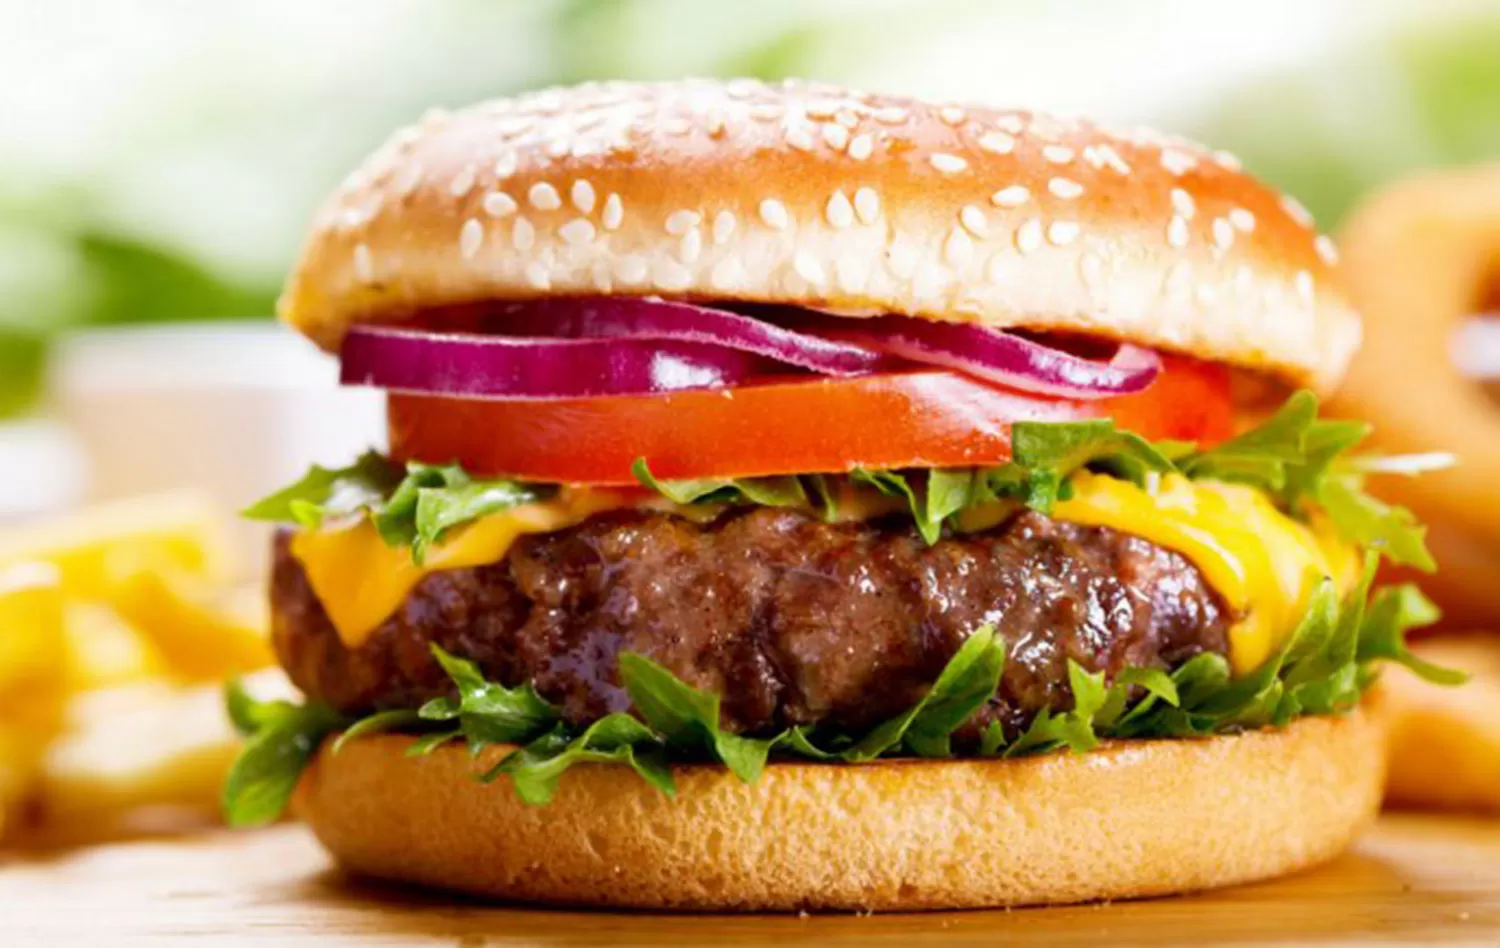 Sondeo de LA GACETA: ¿cuál es tu ingrediente favorito en la hamburguesa?